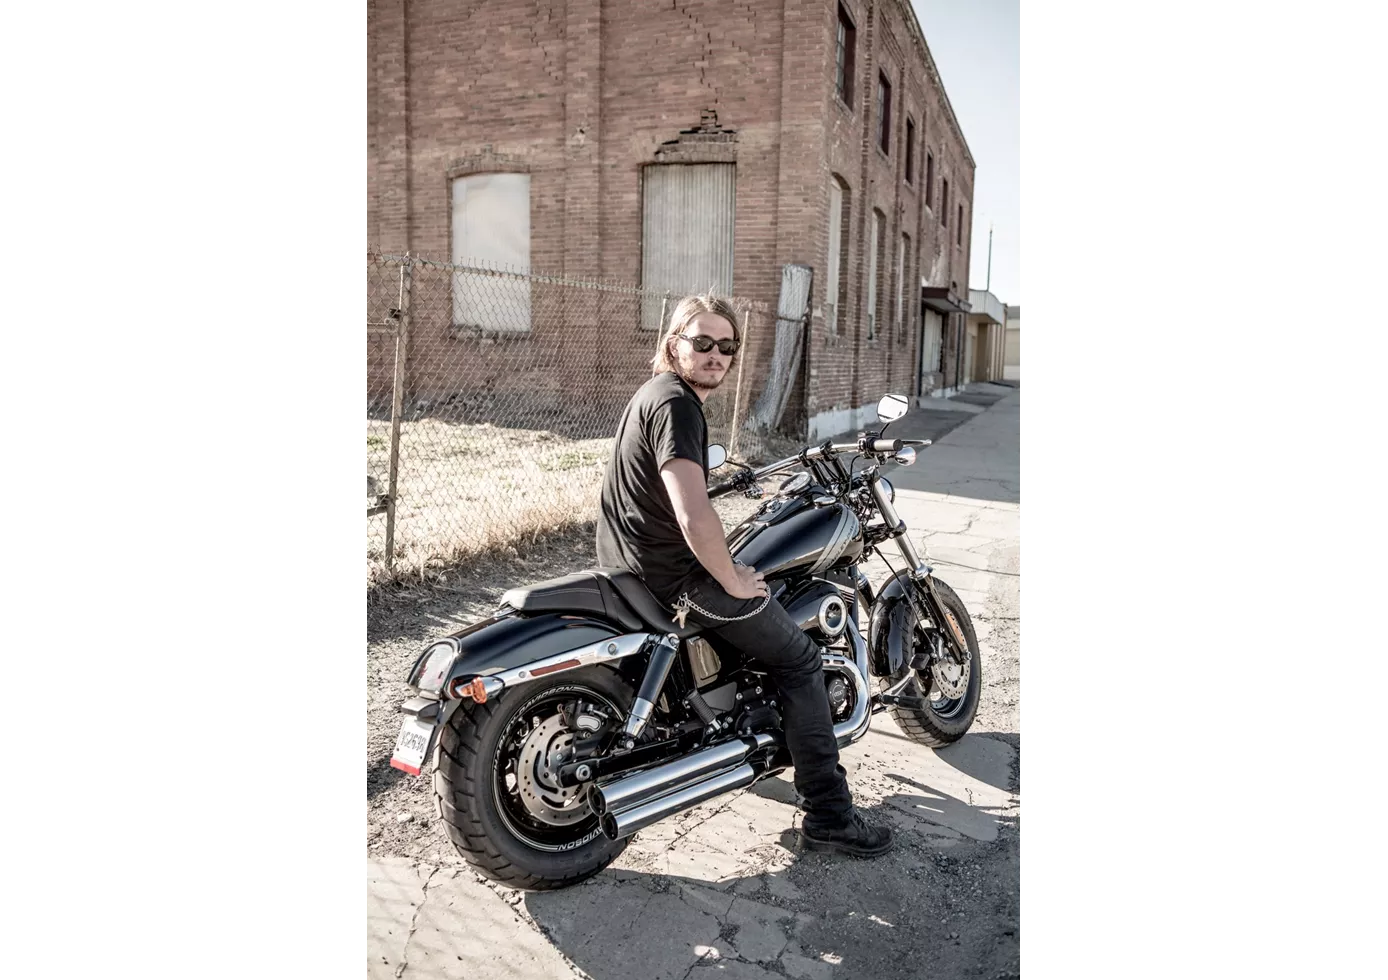 Harley-Davidson Dyna Fat Bob FXDF 2015